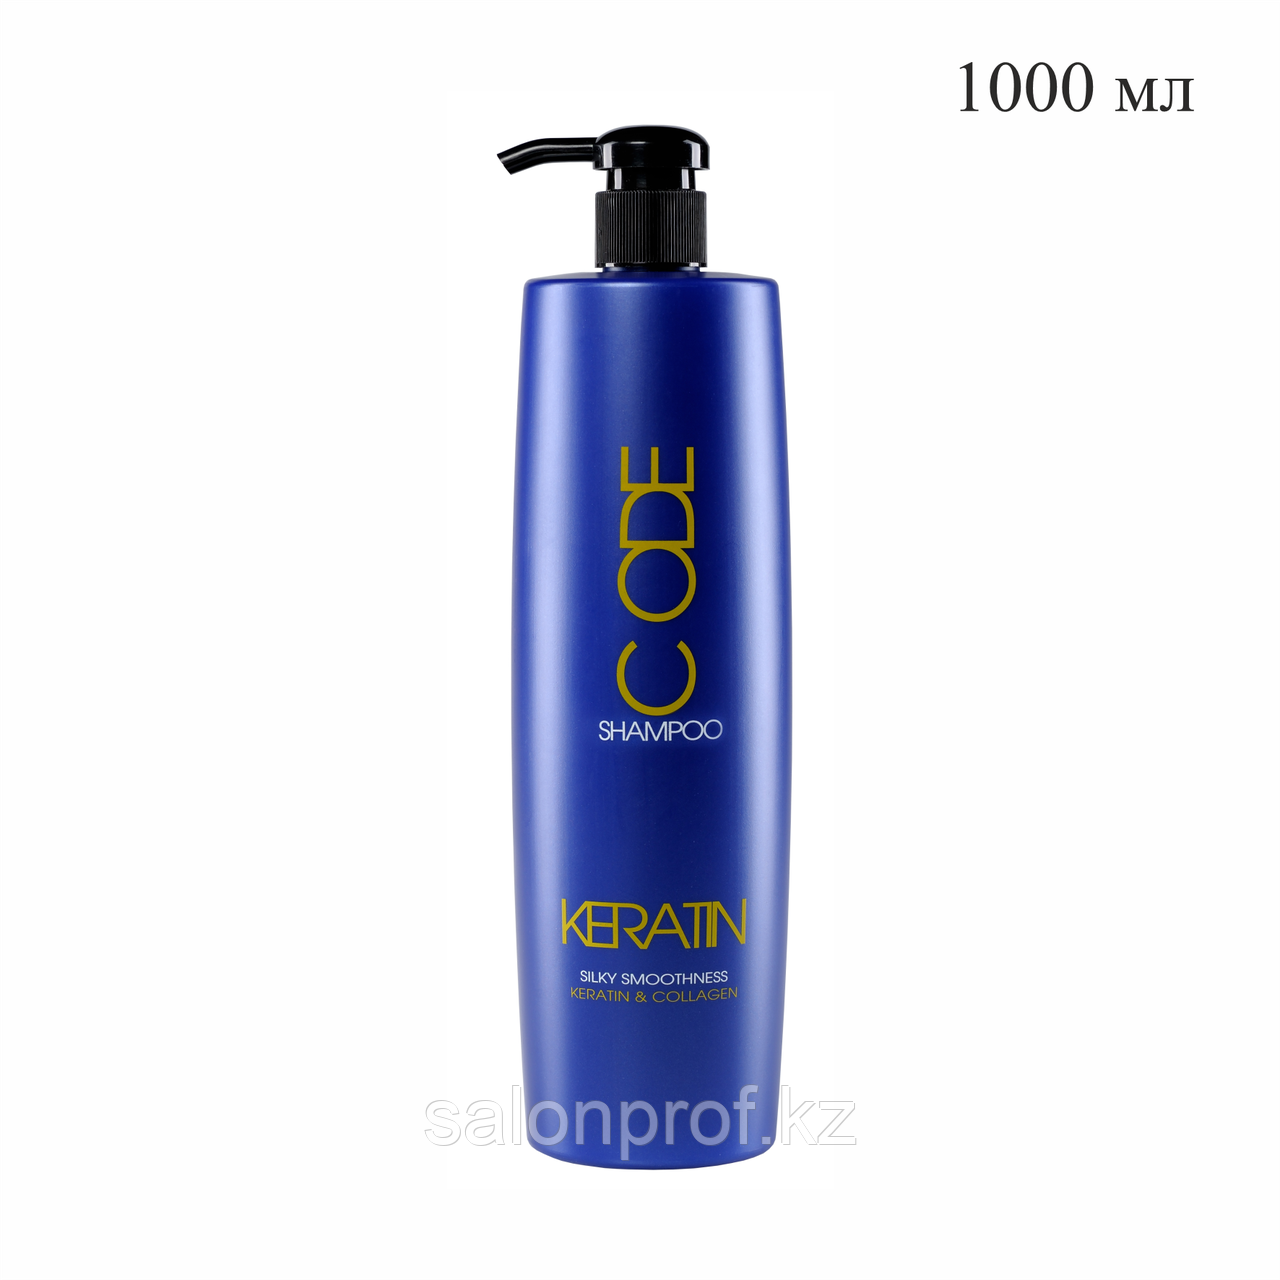 Шампунь для волос KERATIN CODE придающий шелковистую гладкость 1000 мл №10974